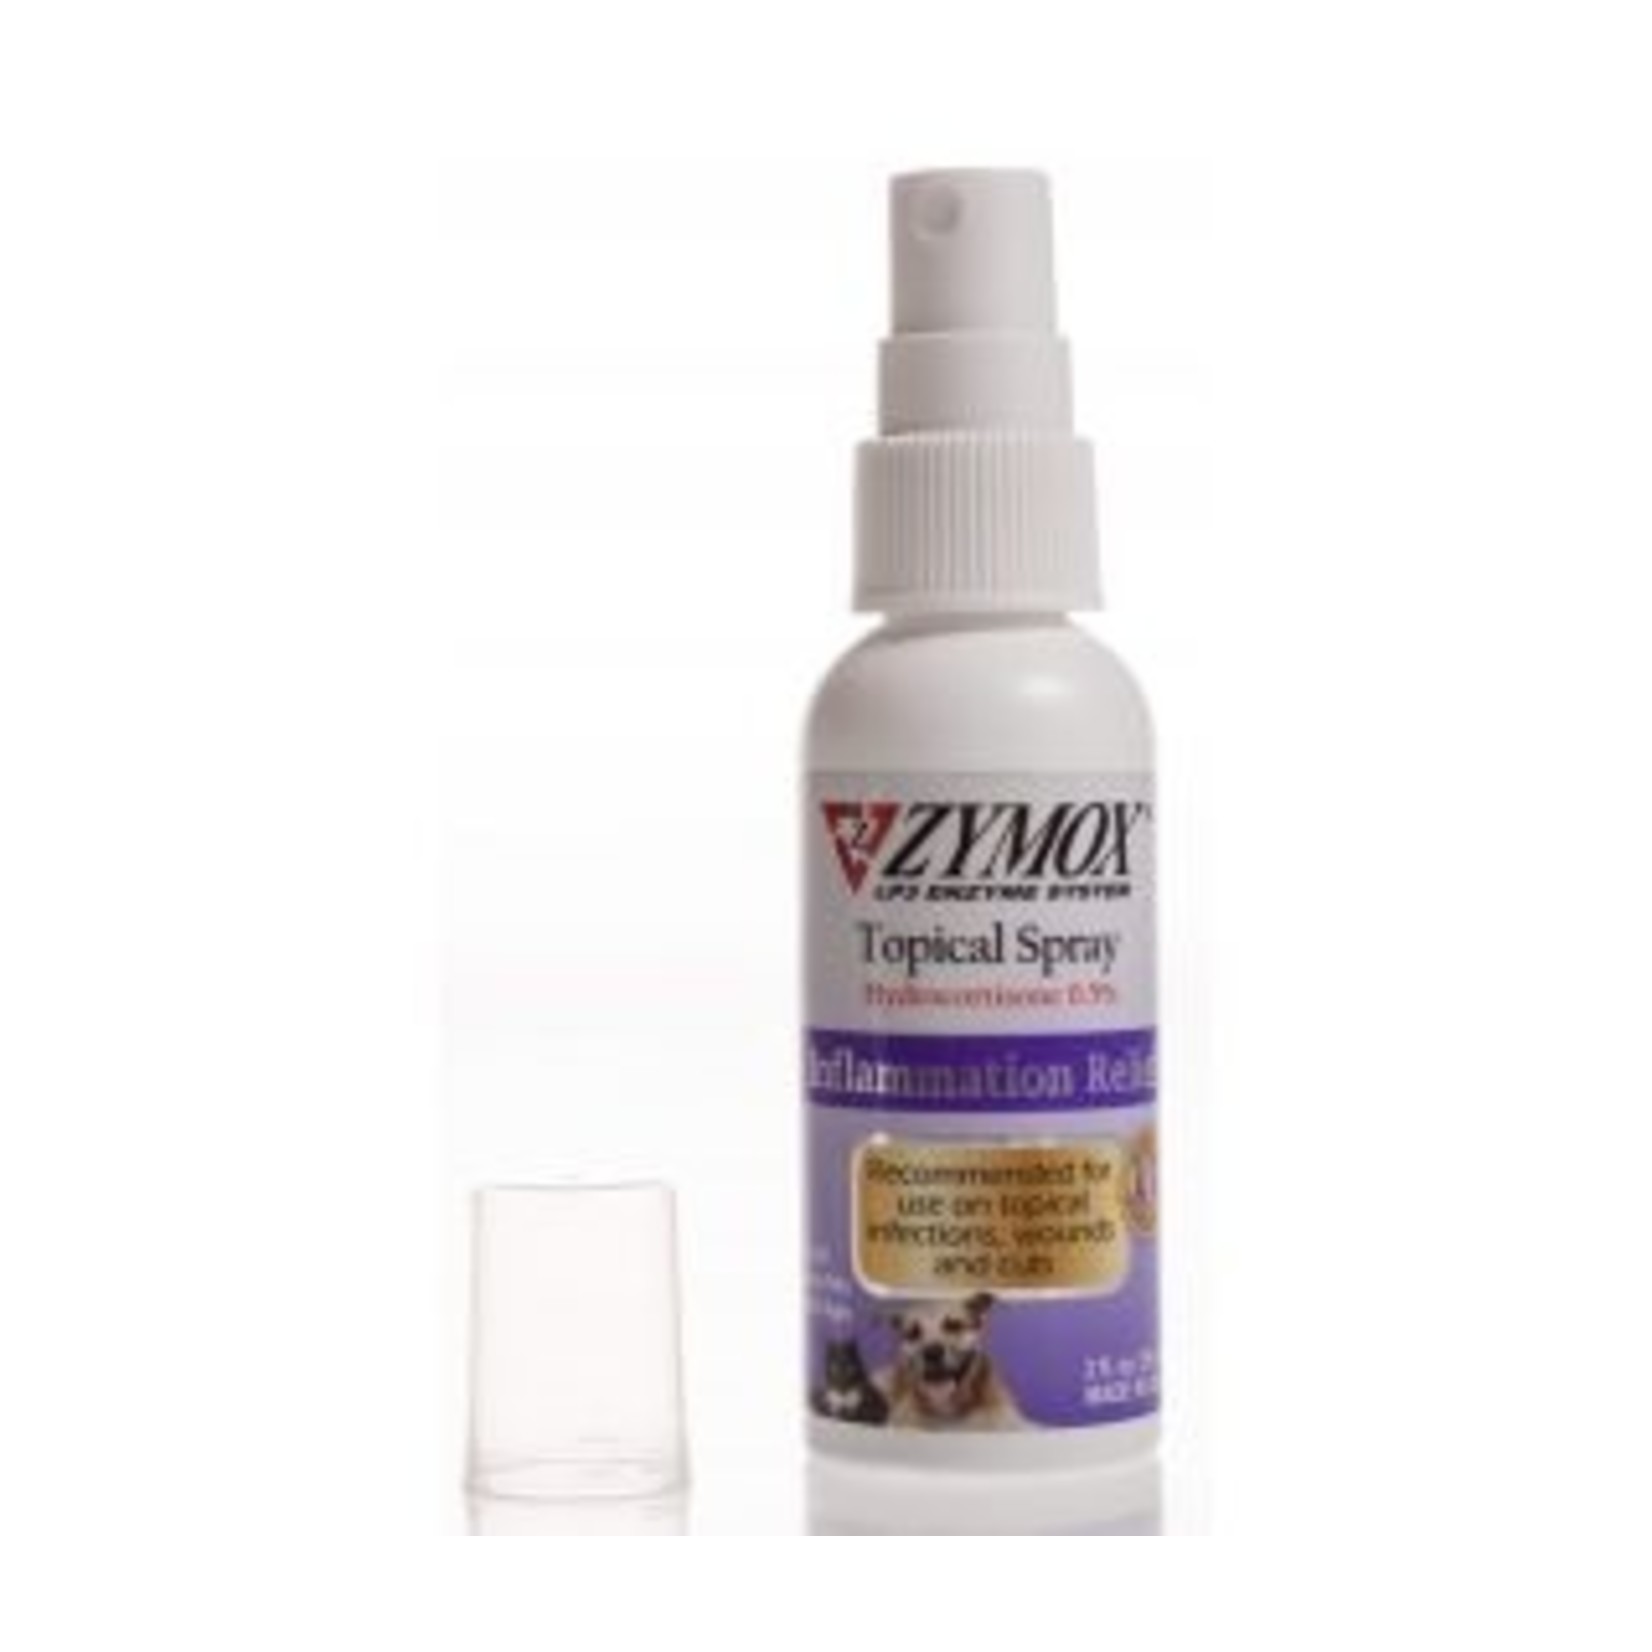 Zymox Zymox Topical Spray Anti-Itch Inflammation Relief with Hydrocortisone 2oz